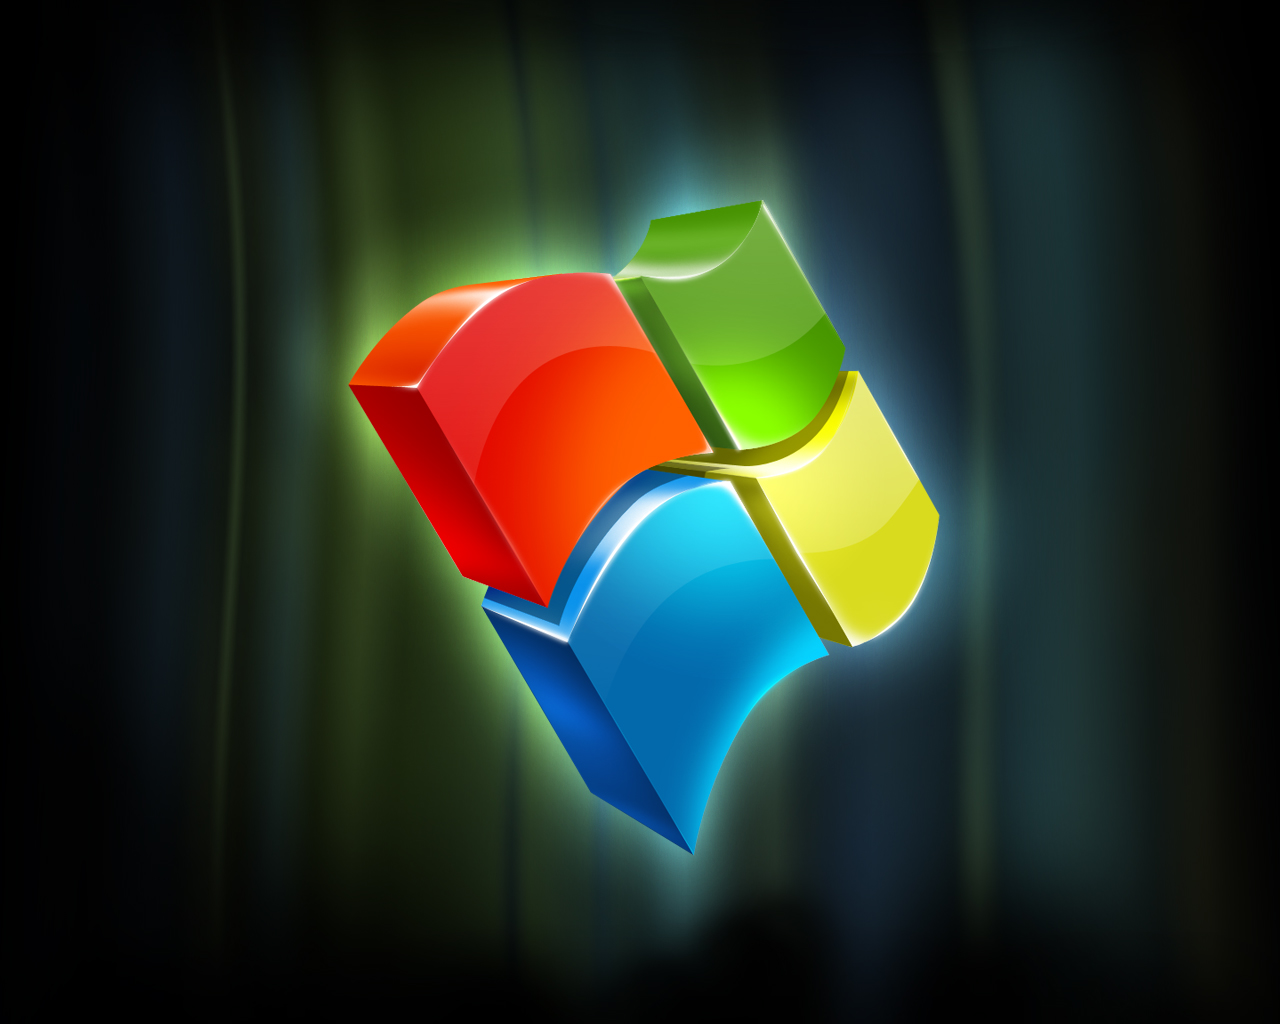 Cool Windows 8.1 Wallpaper - WallpaperSafari